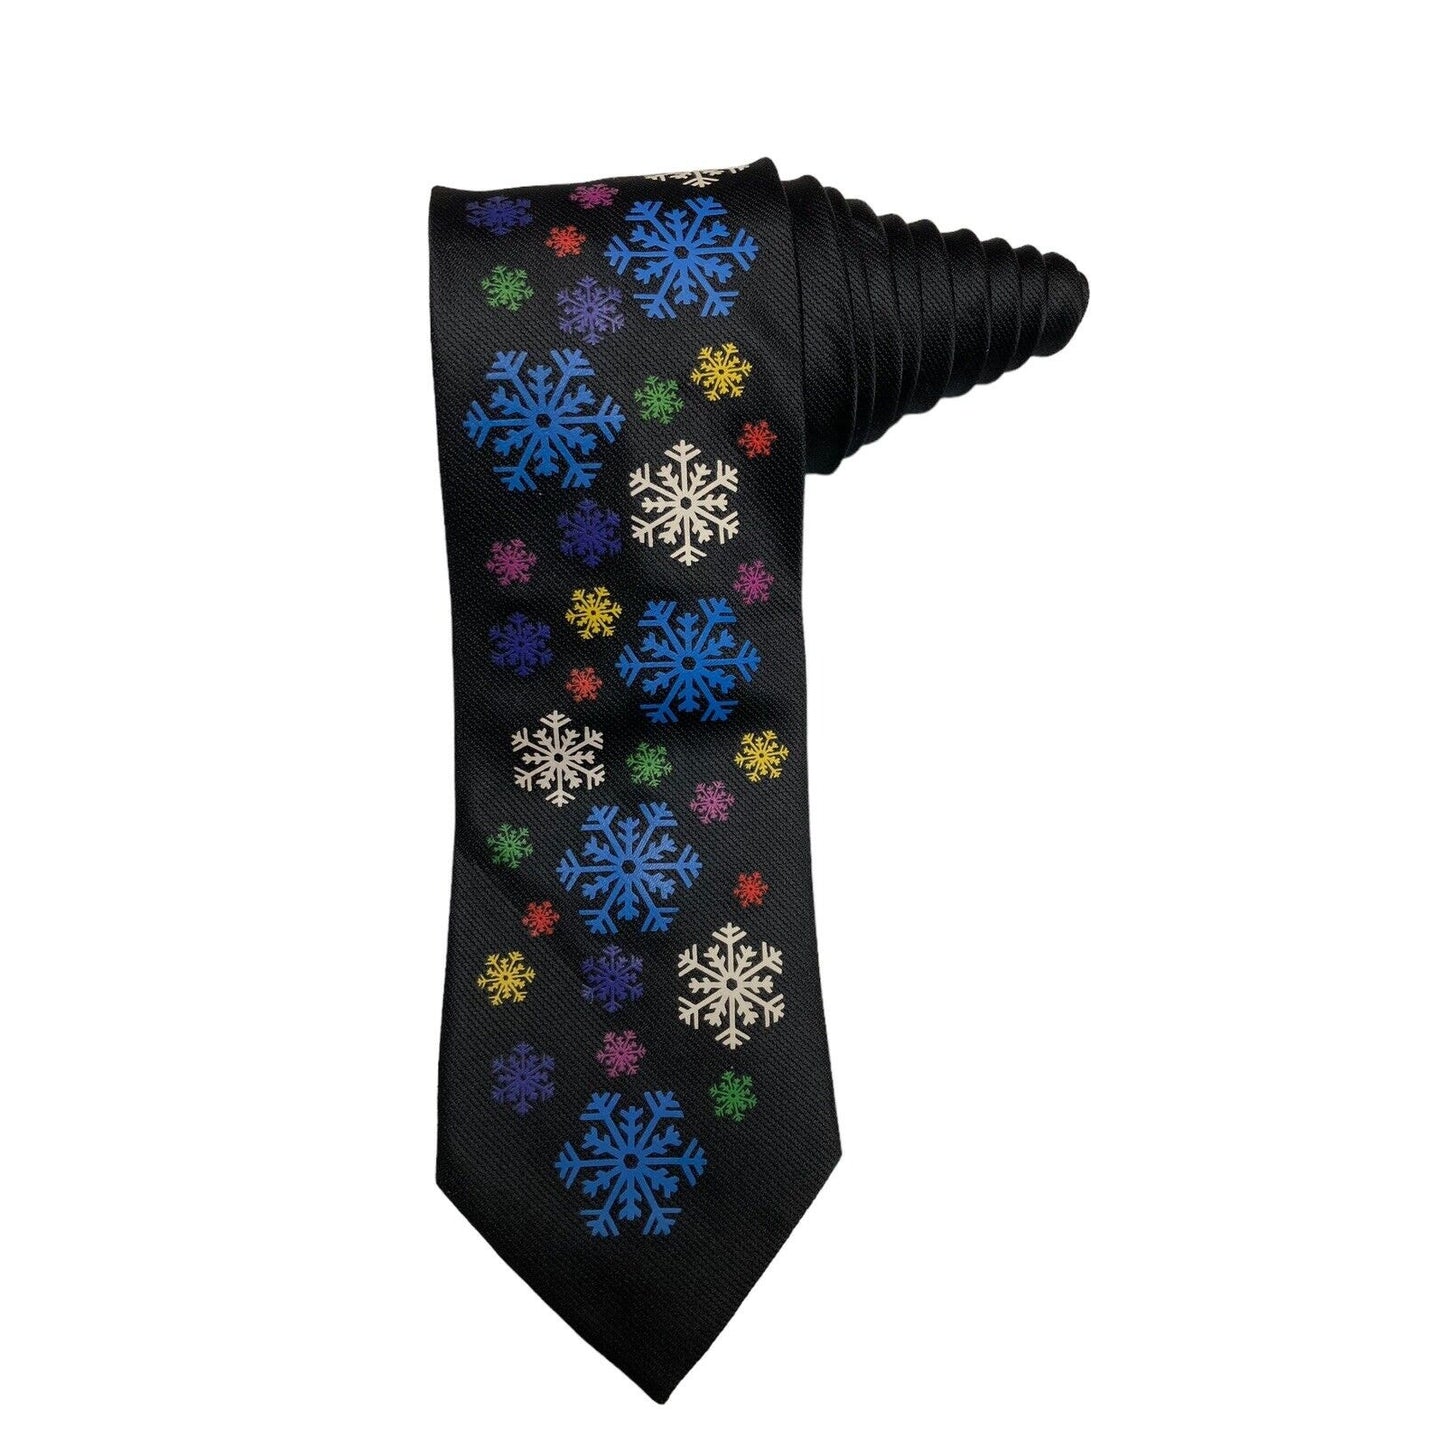 Hallmark Yule Tie Greetings Snowflakes Holiday Novelty Vintage Necktie